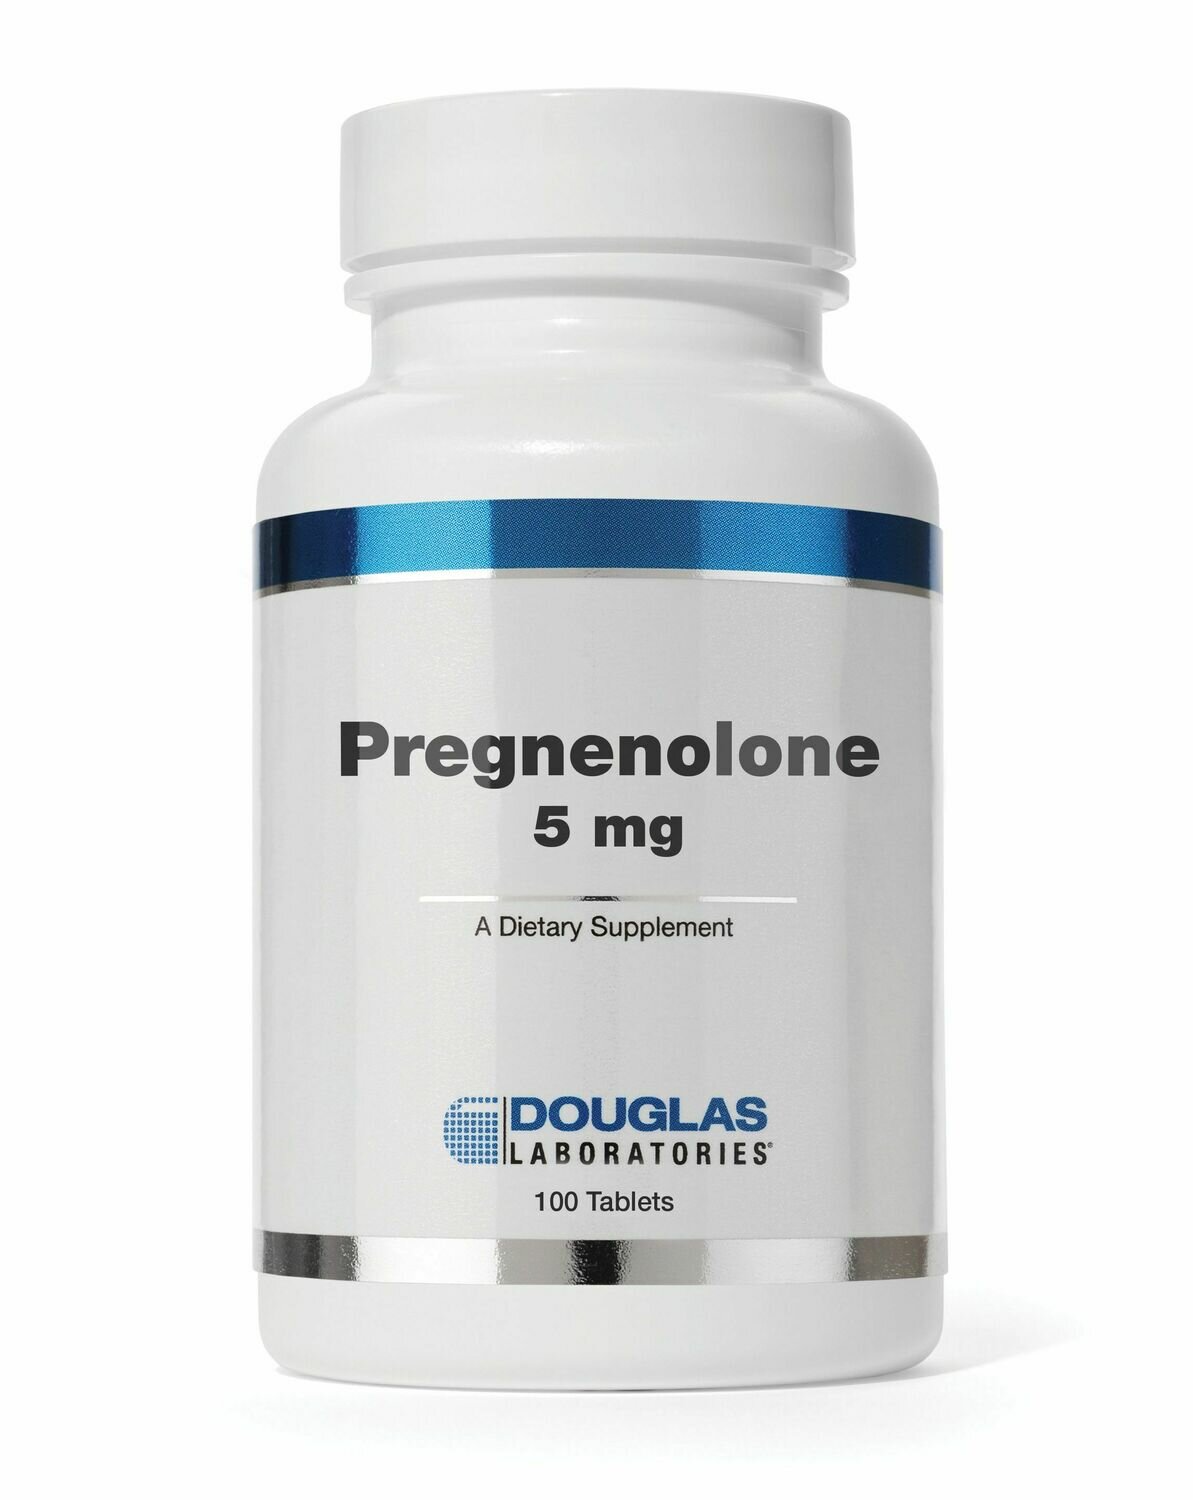 Pregnenolone (5 mg)